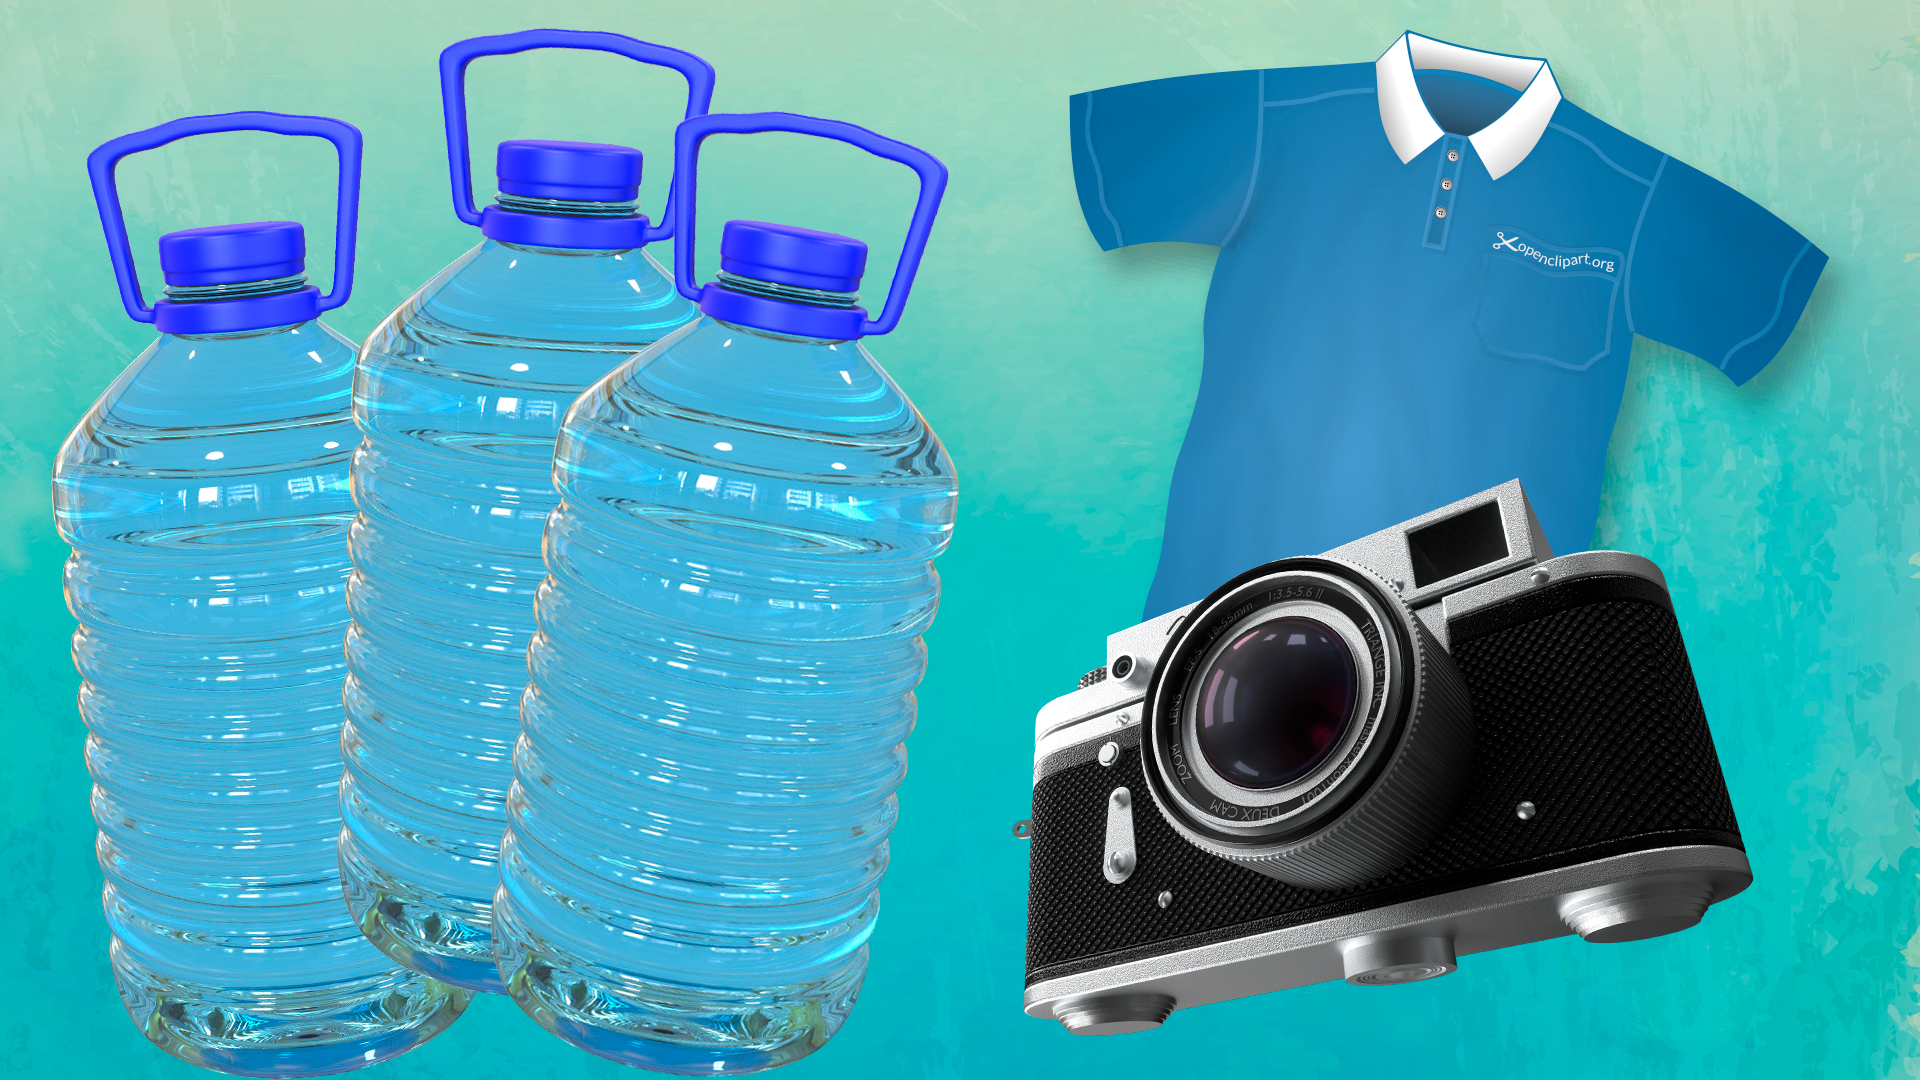 Пятилитровые бутылки, футболка и фотоаппарат — что взять с собой на Святой источник в Чехове